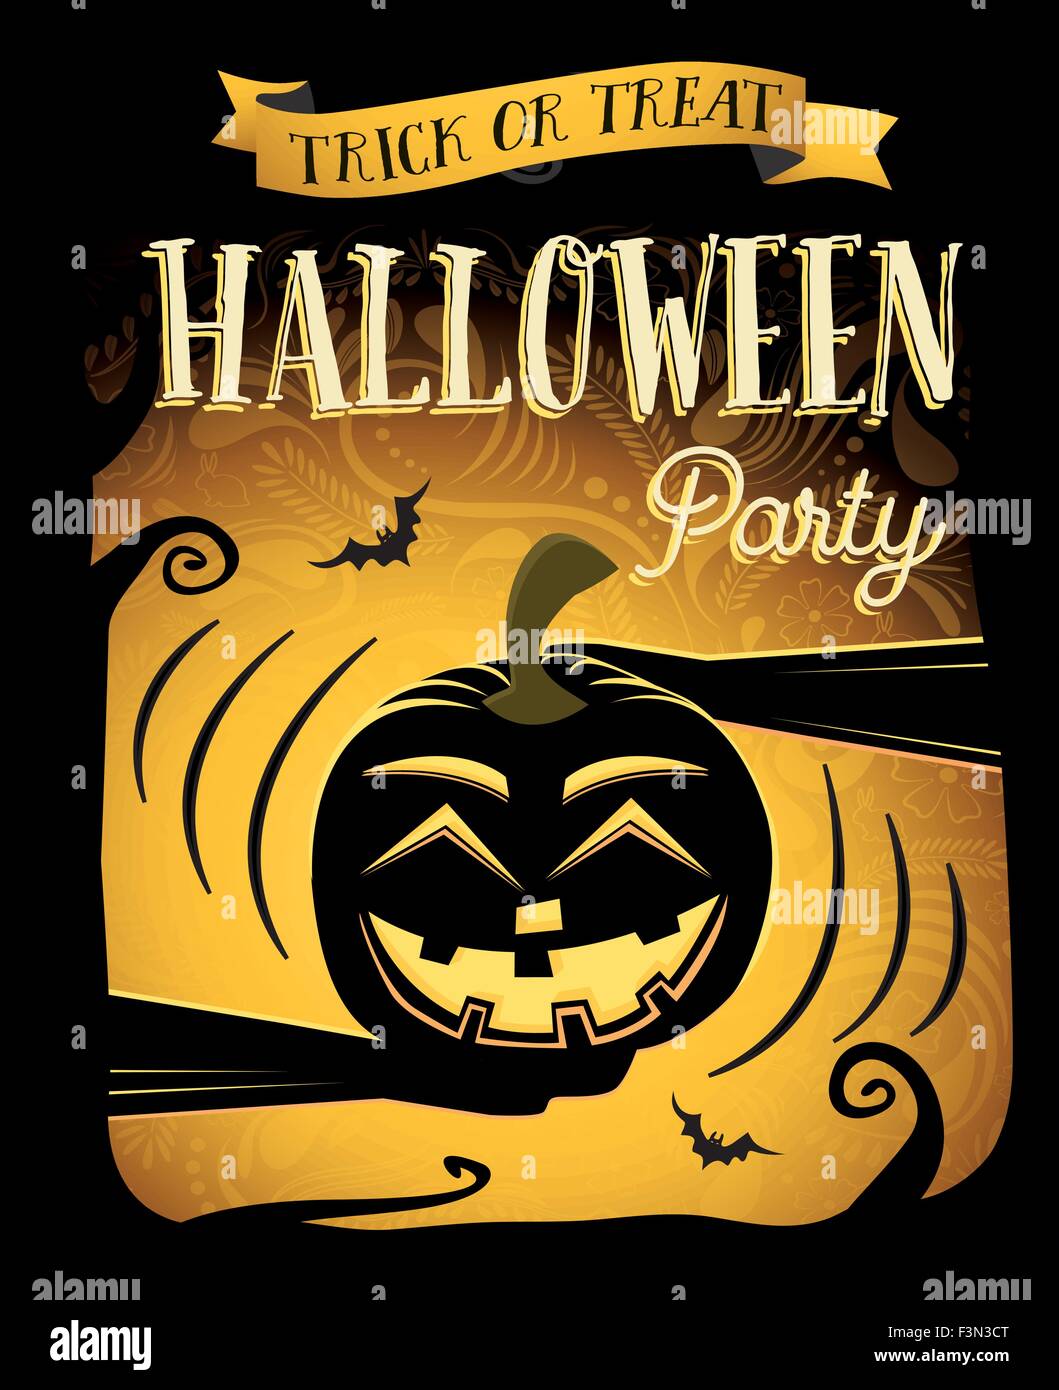 Halloween-Party. Happy Halloween-Poster mit Lachen Kürbis. Vektor-Illustration. Konzept für Club-Flyer, Plakat, Banner oder web Stock Vektor